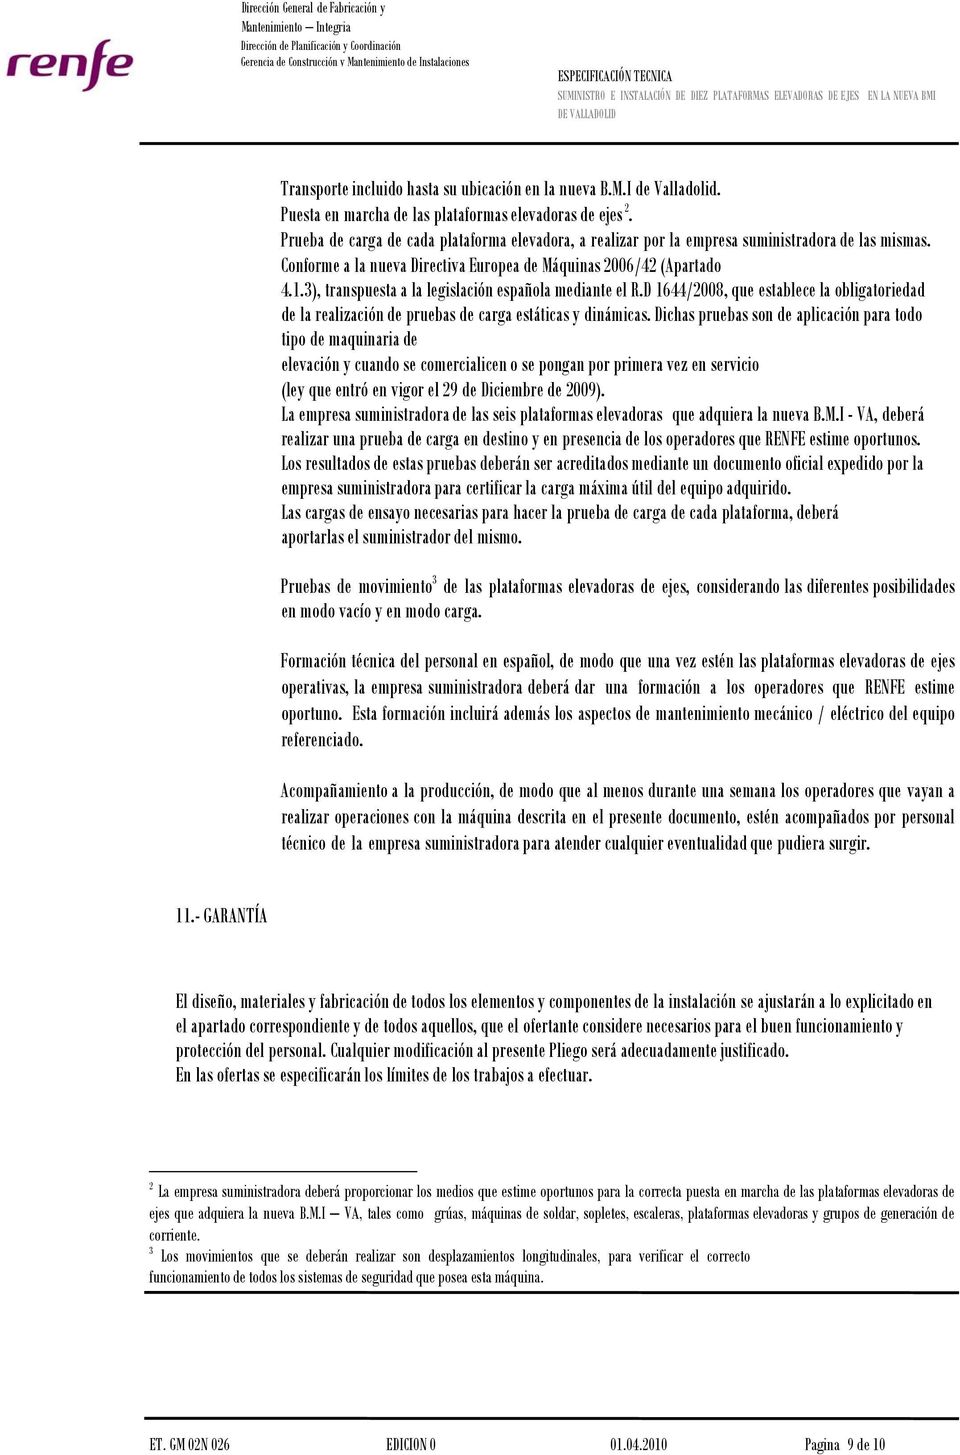 3), transpuesta a la legislación española mediante el R.D 1644/2008, que establece la obligatoriedad de la realización de pruebas de carga estáticas y dinámicas.